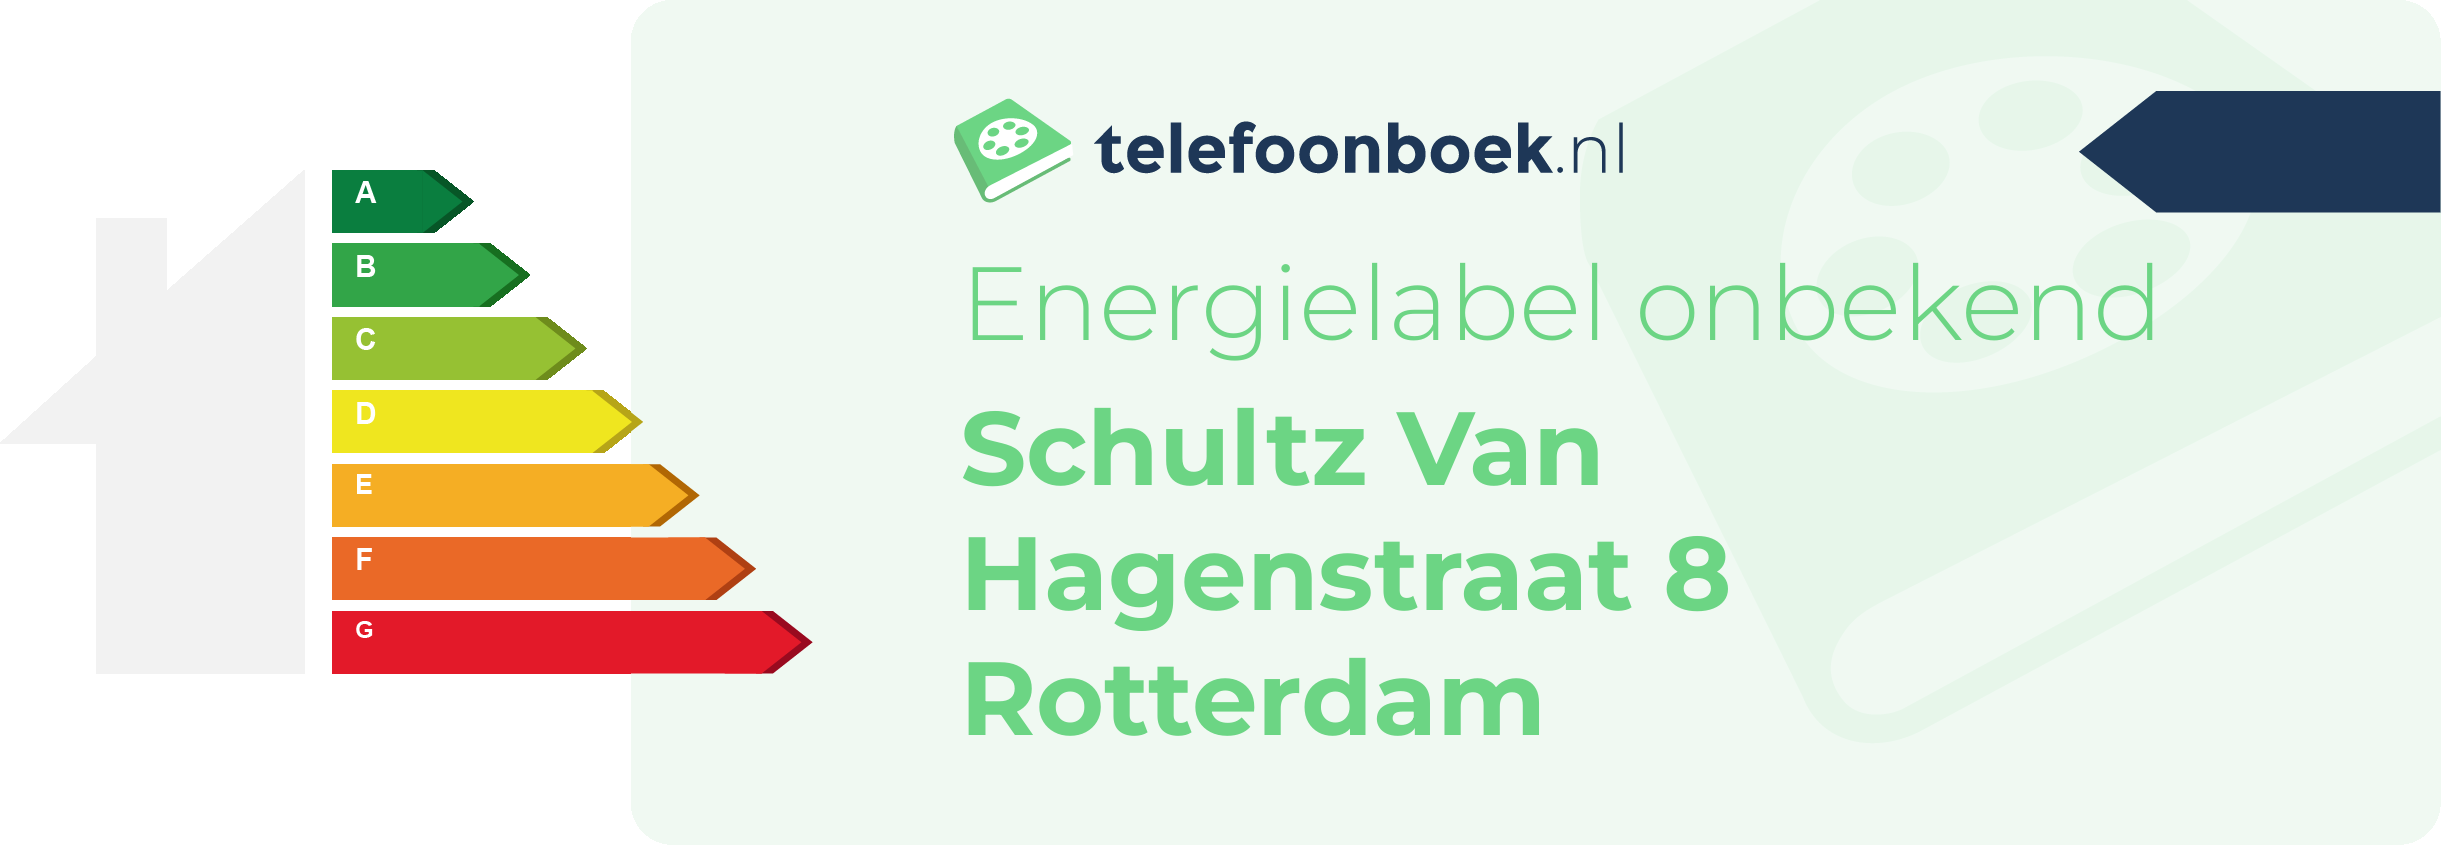 Energielabel Schultz Van Hagenstraat 8 Rotterdam